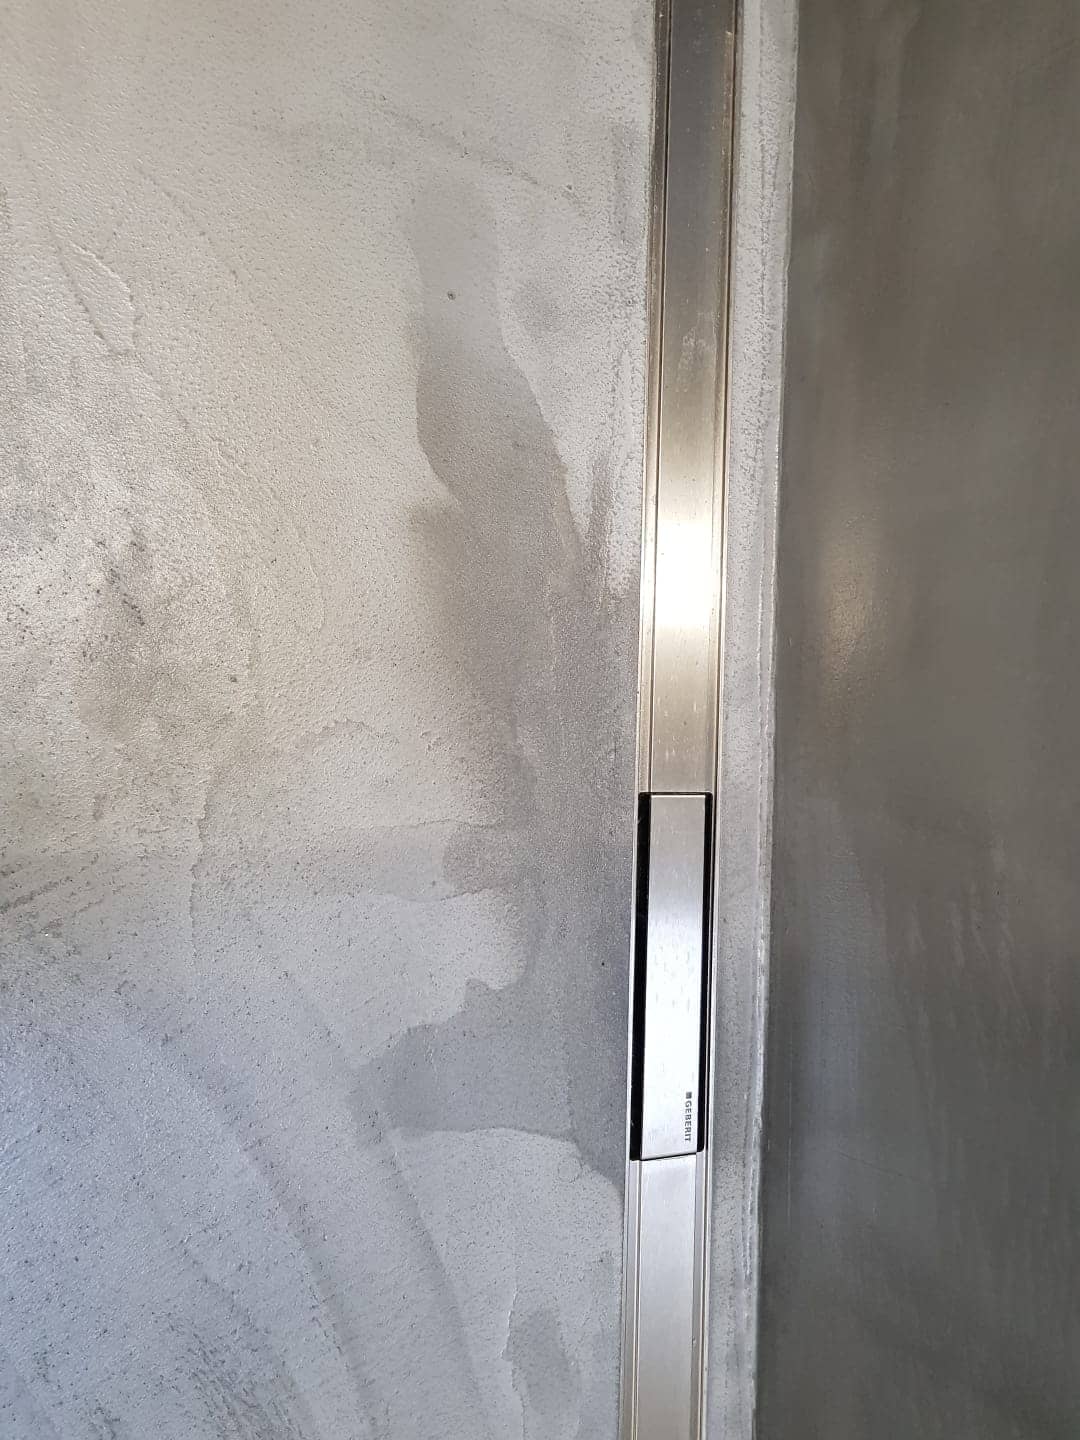   Microcemento y humedad en una ducha